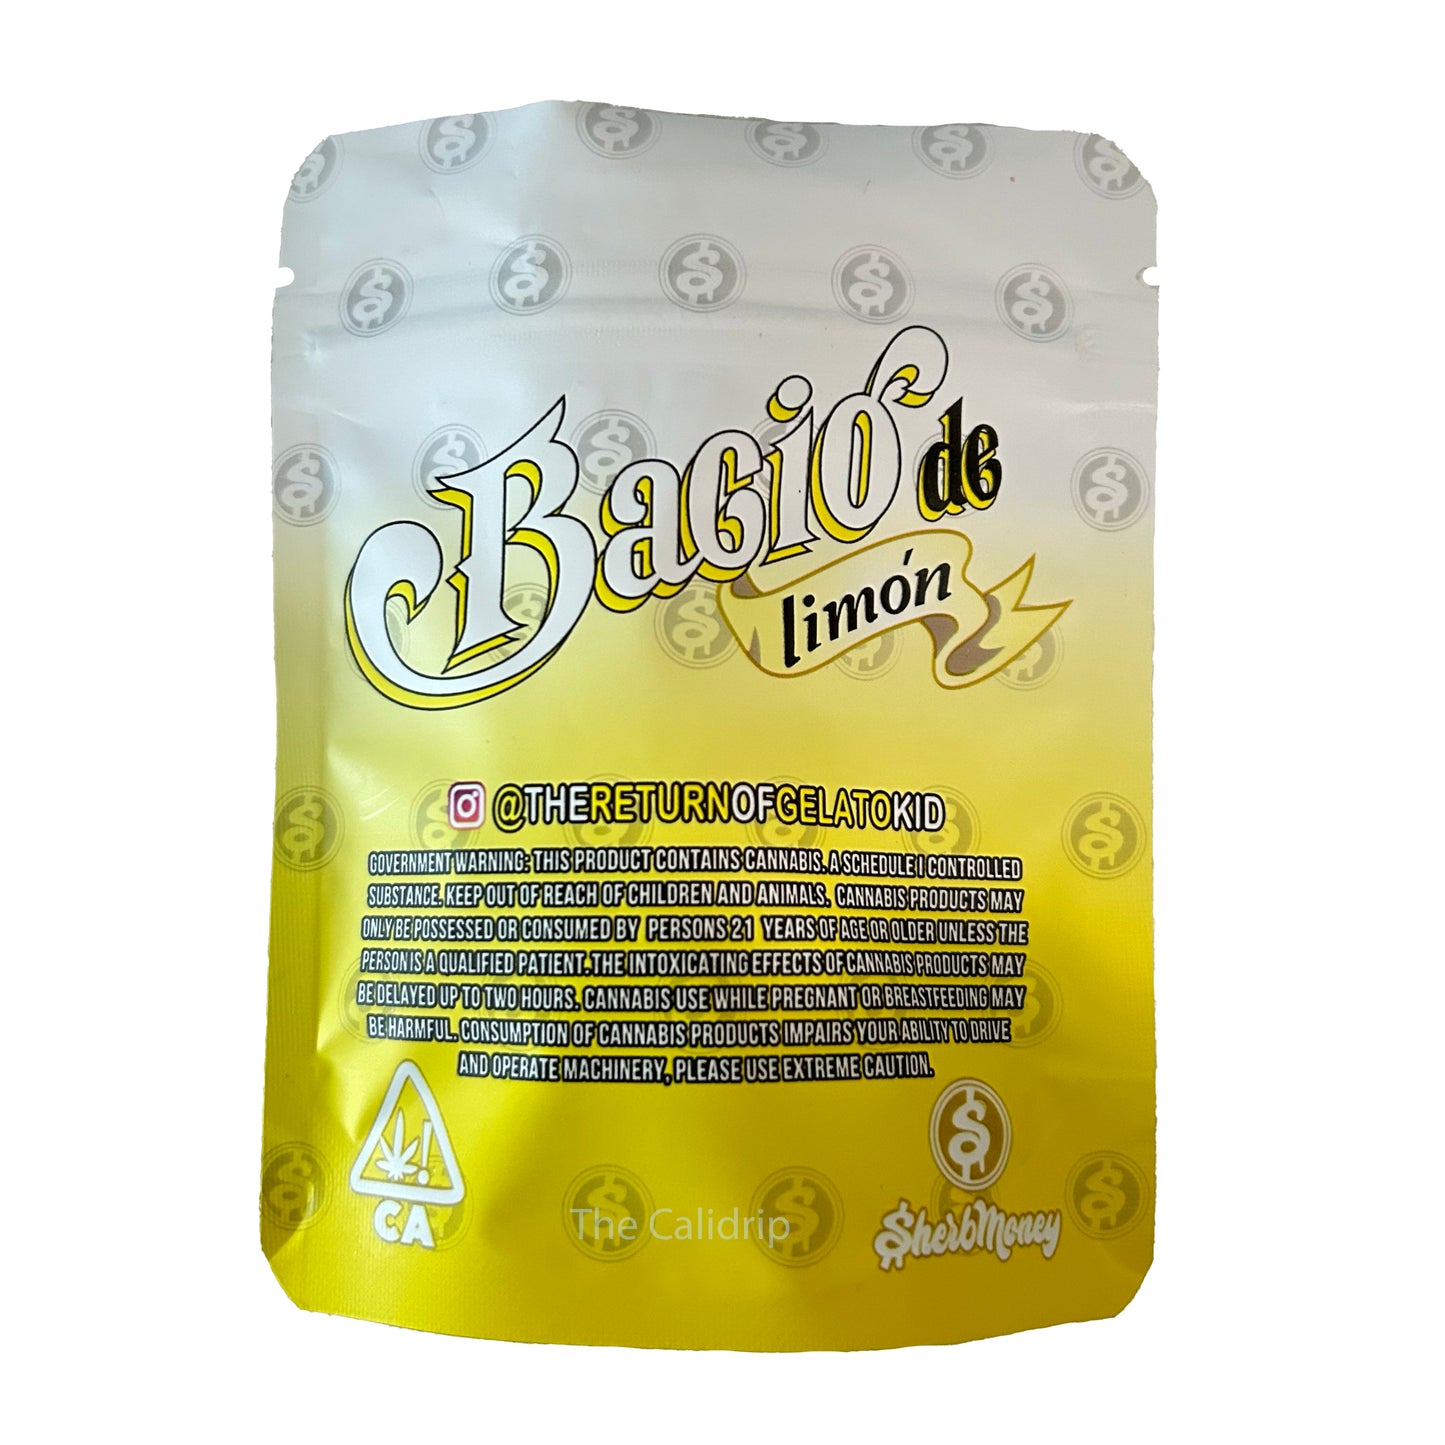 Yellow Bacio de Limon 3.5G Mylar Bags